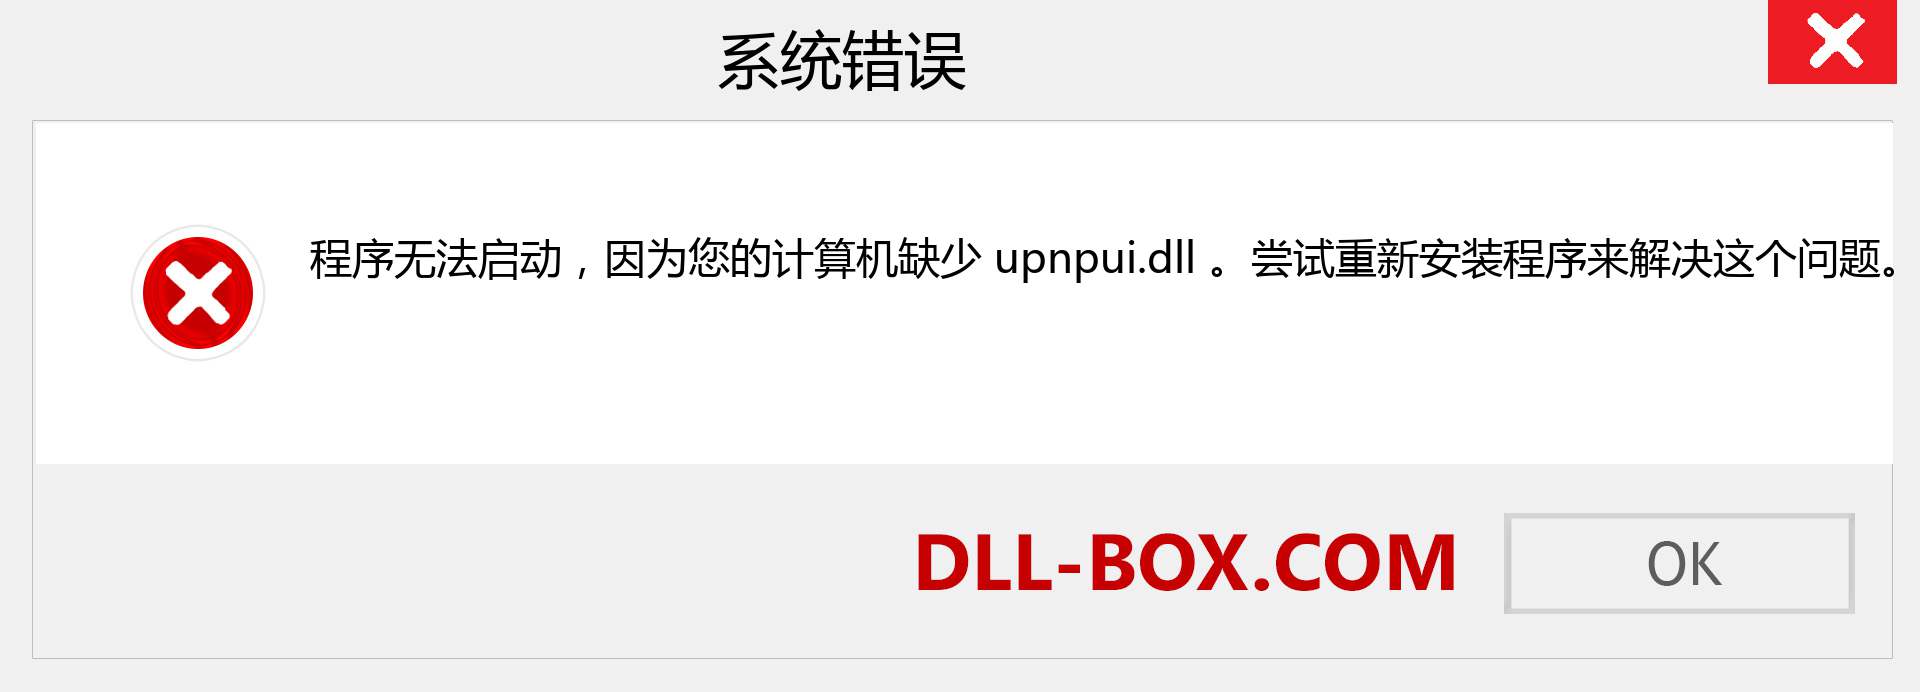 upnpui.dll 文件丢失？。 适用于 Windows 7、8、10 的下载 - 修复 Windows、照片、图像上的 upnpui dll 丢失错误